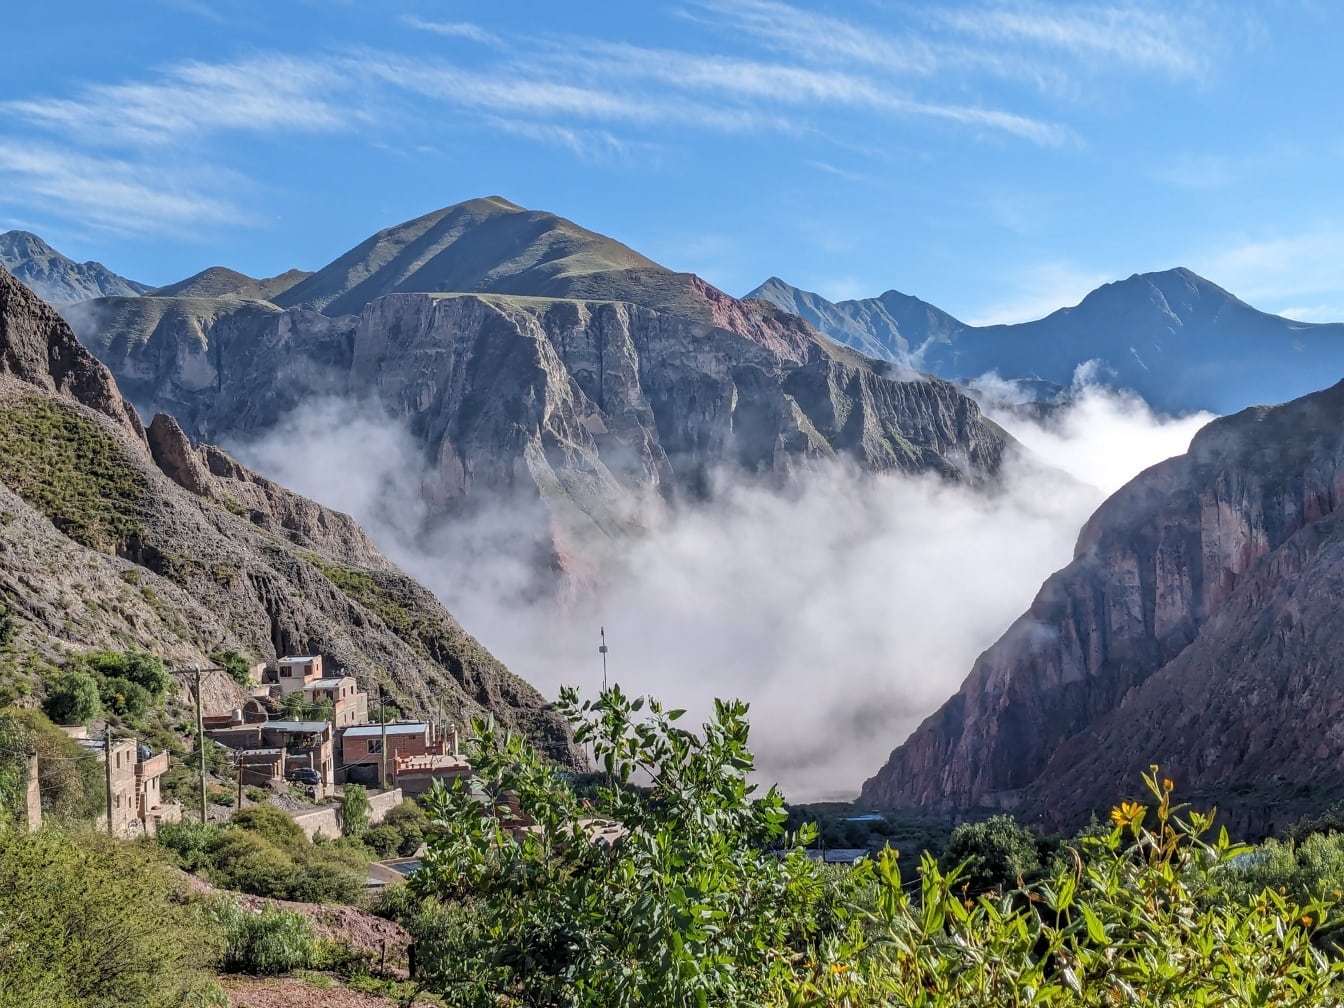 Paisaje montañoso con densa niebla que cubre el asentamiento rural en el valle